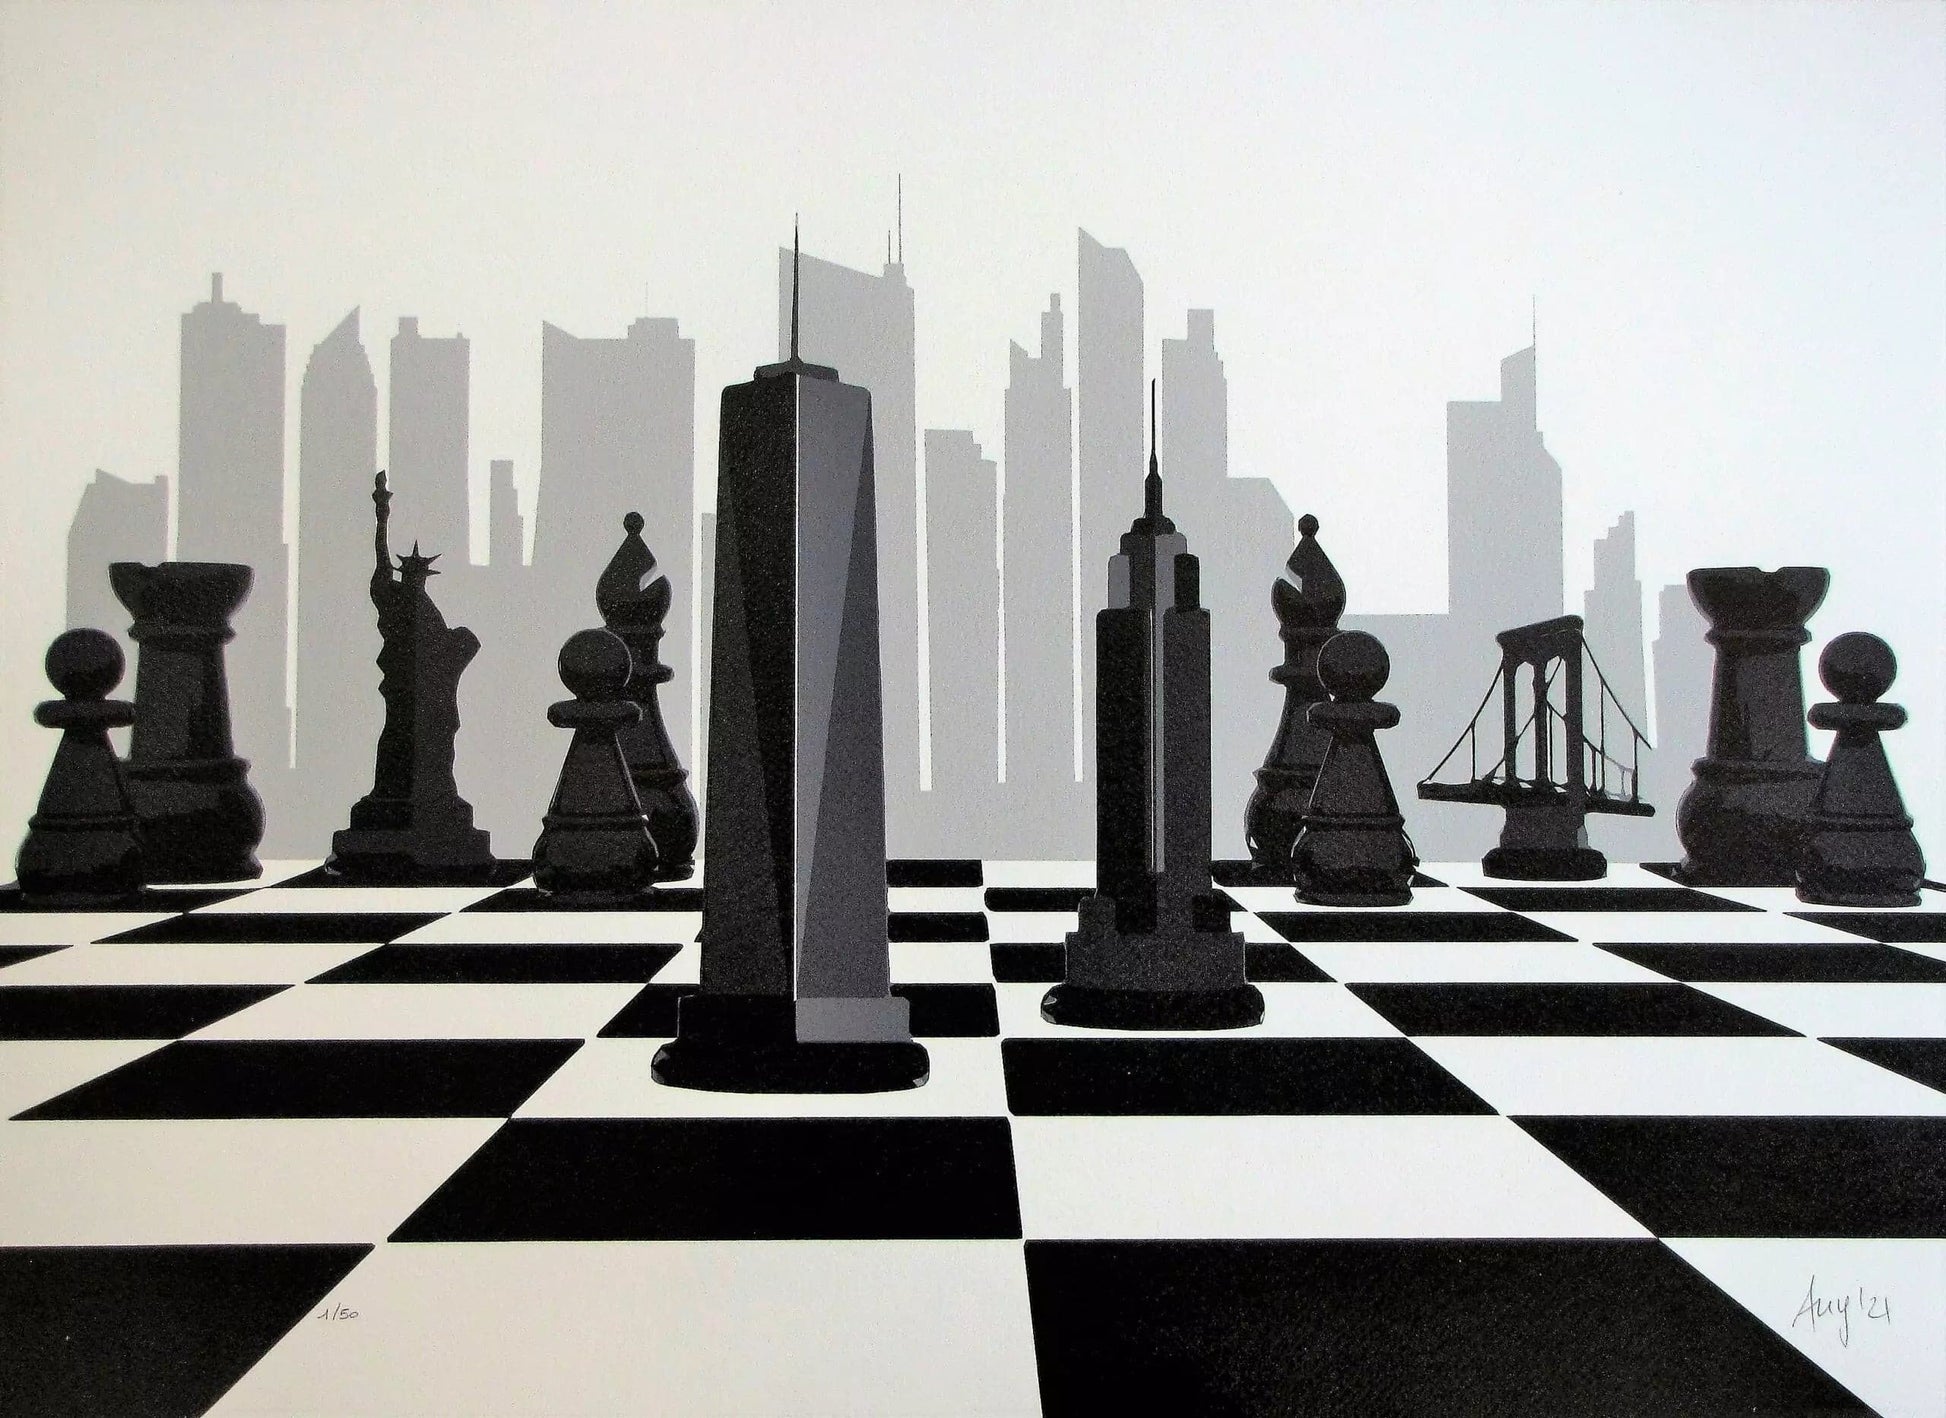 The Queen's Gambit di Any. Stampa giclée stampa su carta 320 gsm edizione limitata rappresentante una scacchiera realizzata con i monumenti principali della città di New York | Cd Studio d'Arte